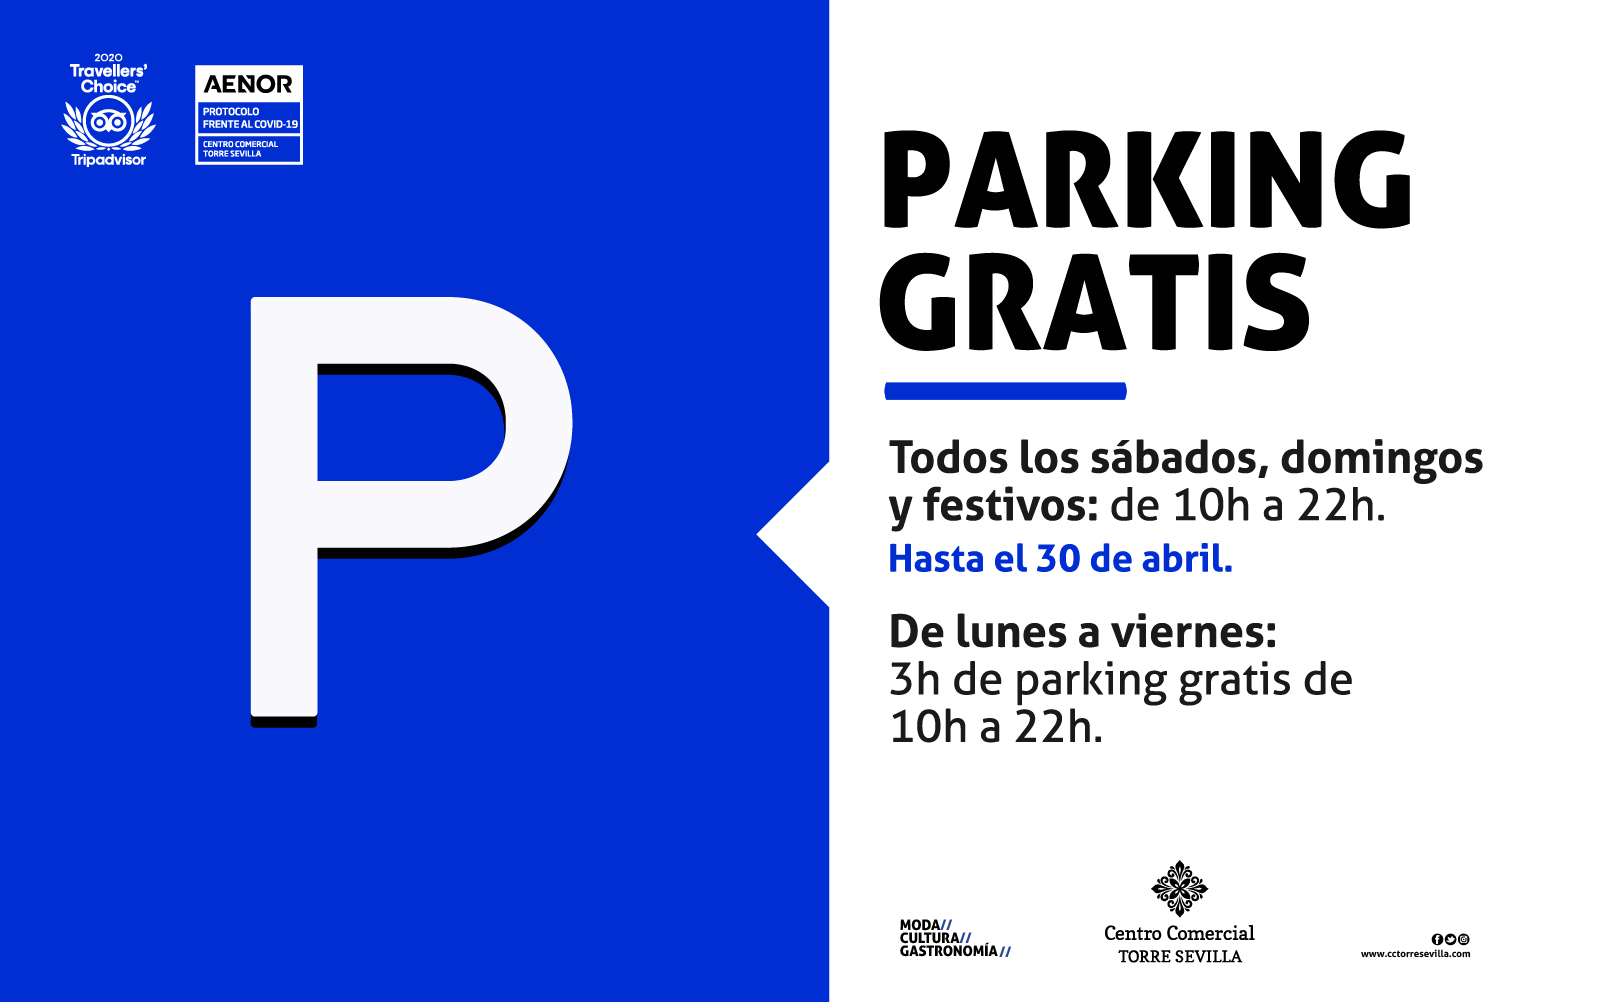 Parking gratis sábados, domingos y festivos.